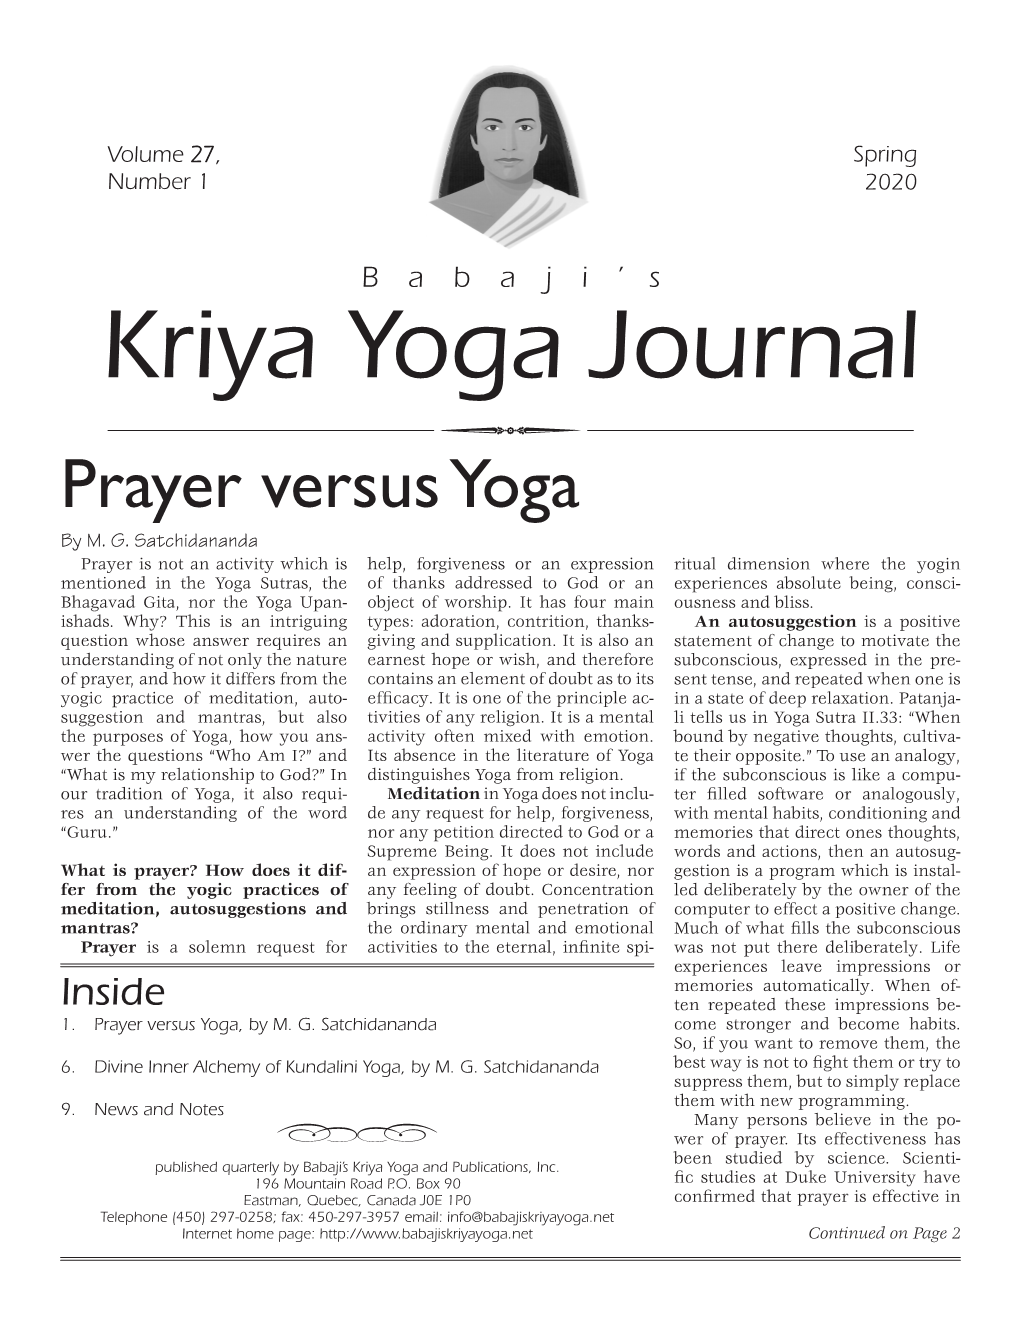 Kriya Yoga Journal